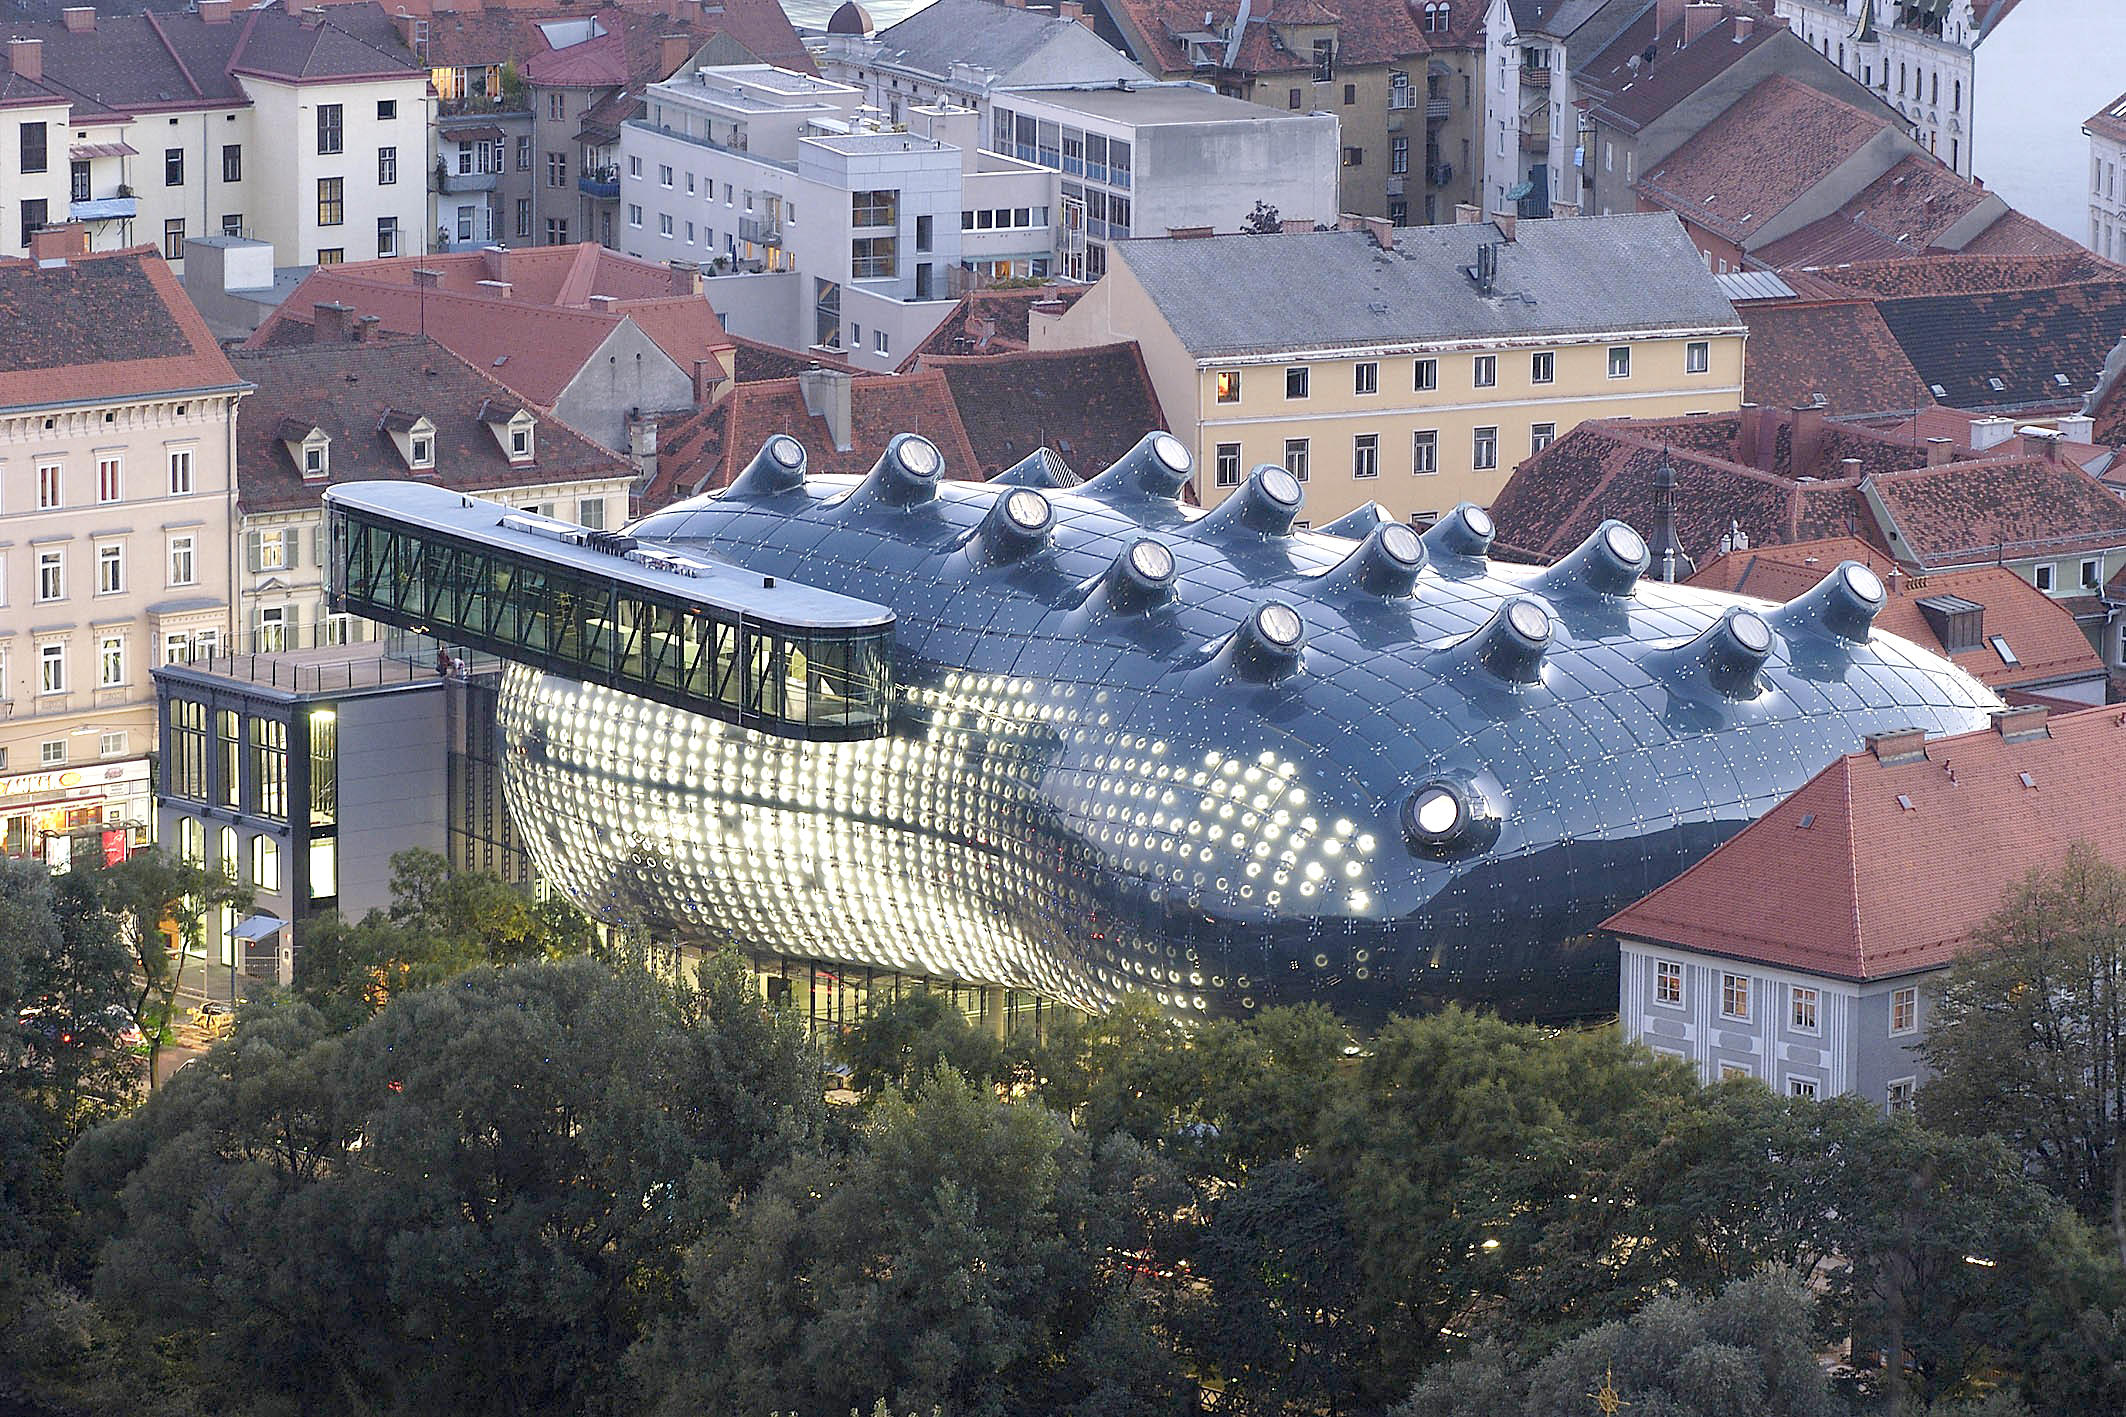 Foto des Kunsthauses Graz. Das Bauwerk, das auch unter dem Namen „Friendly Alien“ bekannt ist, hebt sich in Form und Material durch seine biomorphen, runden Formen bewusst von der barocken Dachlandschaft mit ihren roten Ziegeldächern ab. Stilistisch ist das Kunsthaus Graz der Blob-Architektur zuzuordnen.